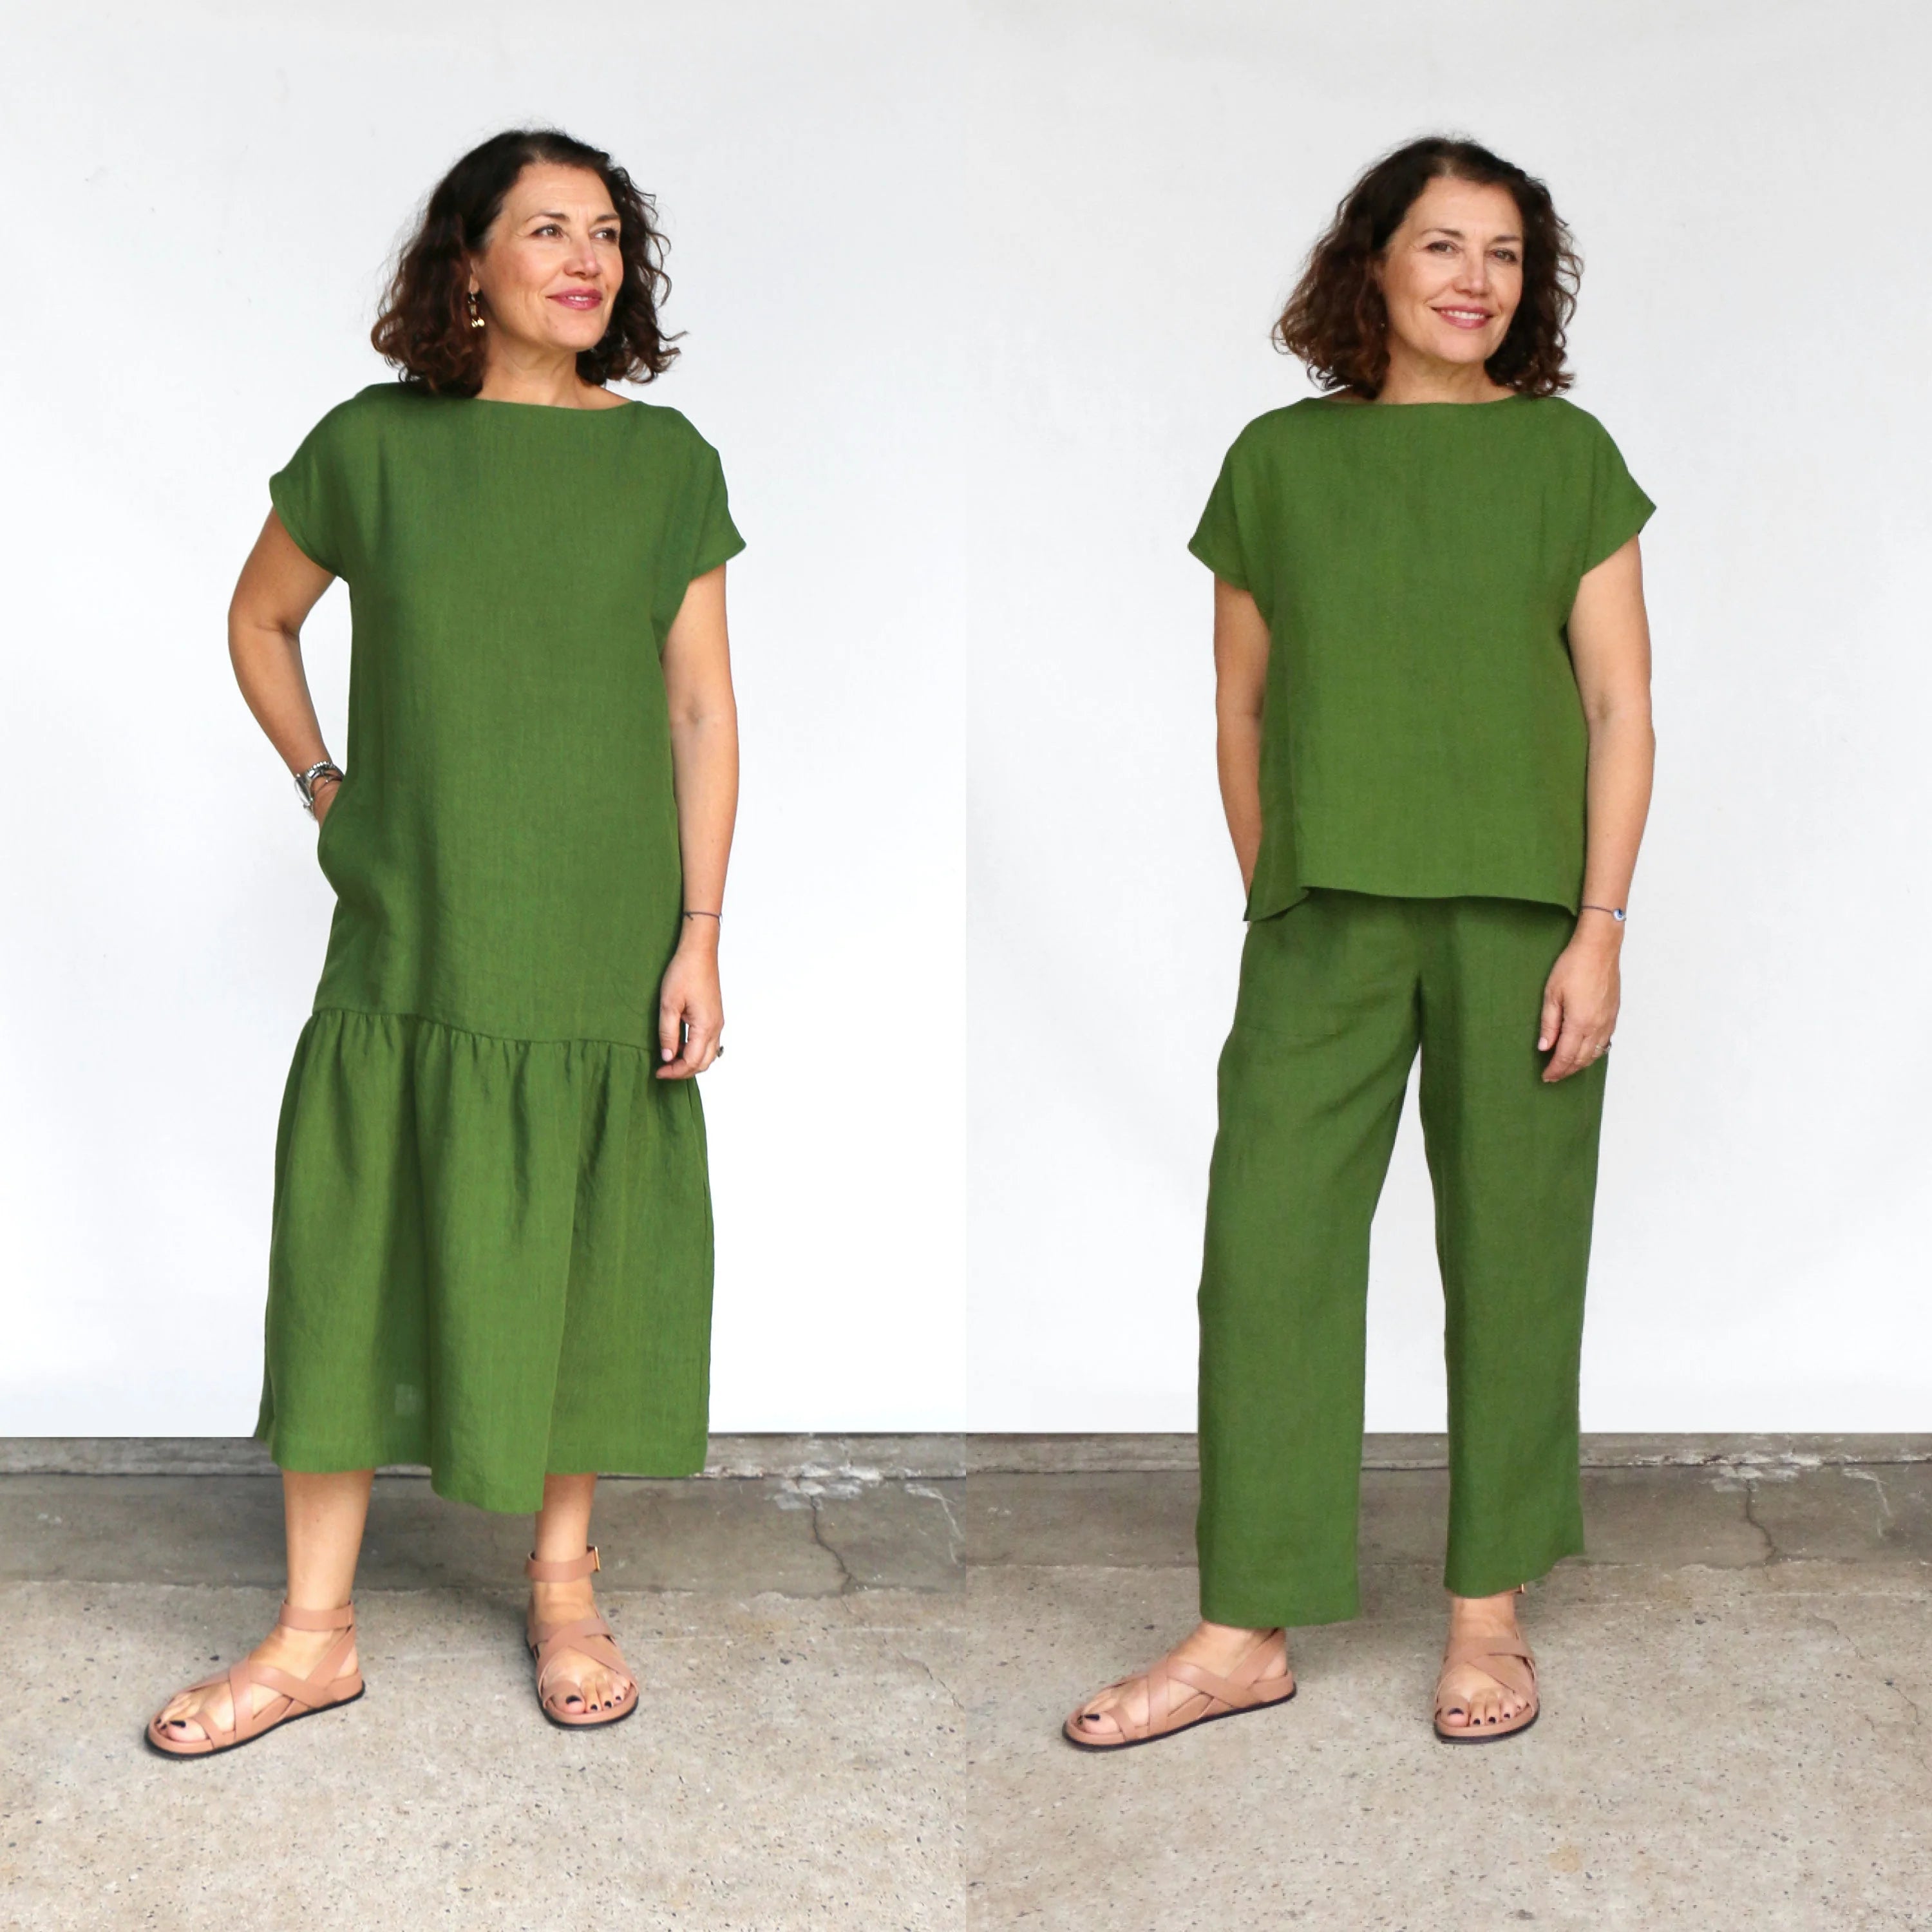 Tessuti Mattea Dress & Top Sewing Pattern